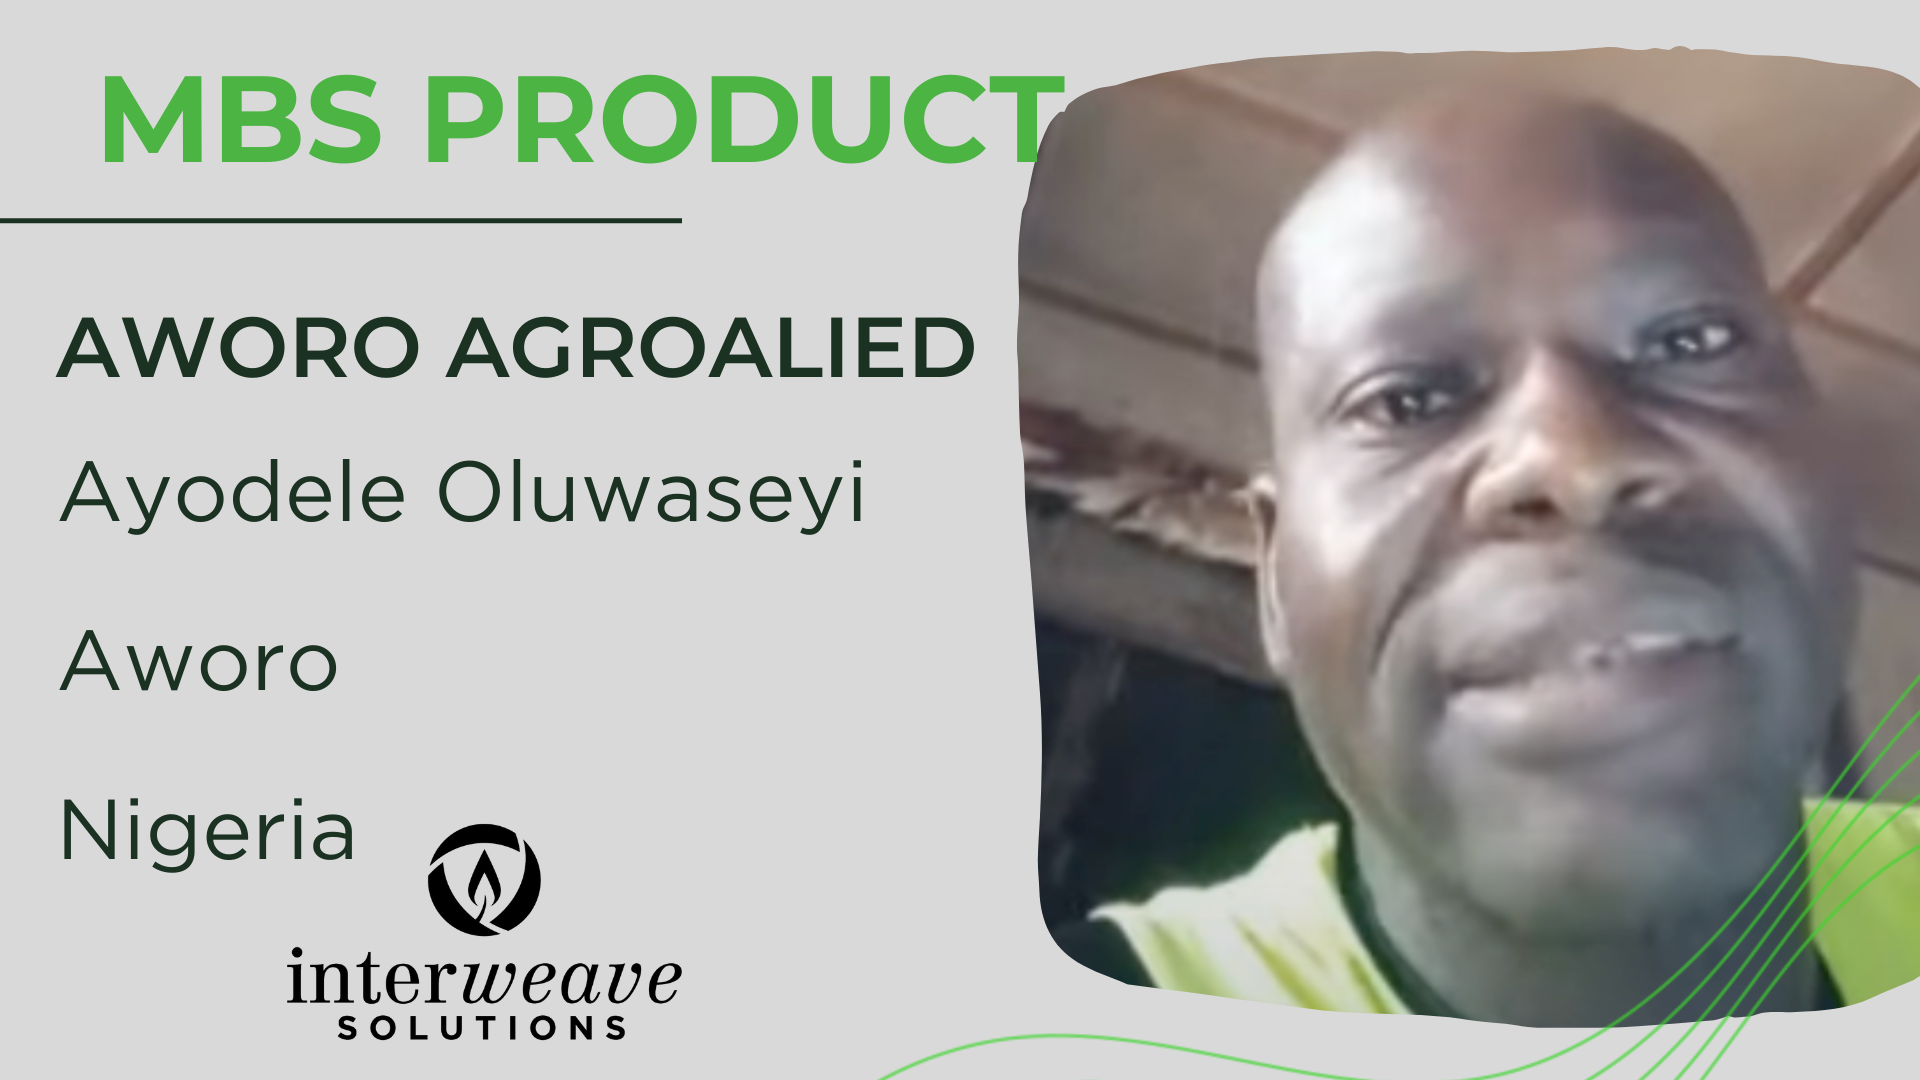 Ayodele Oluwaseyi